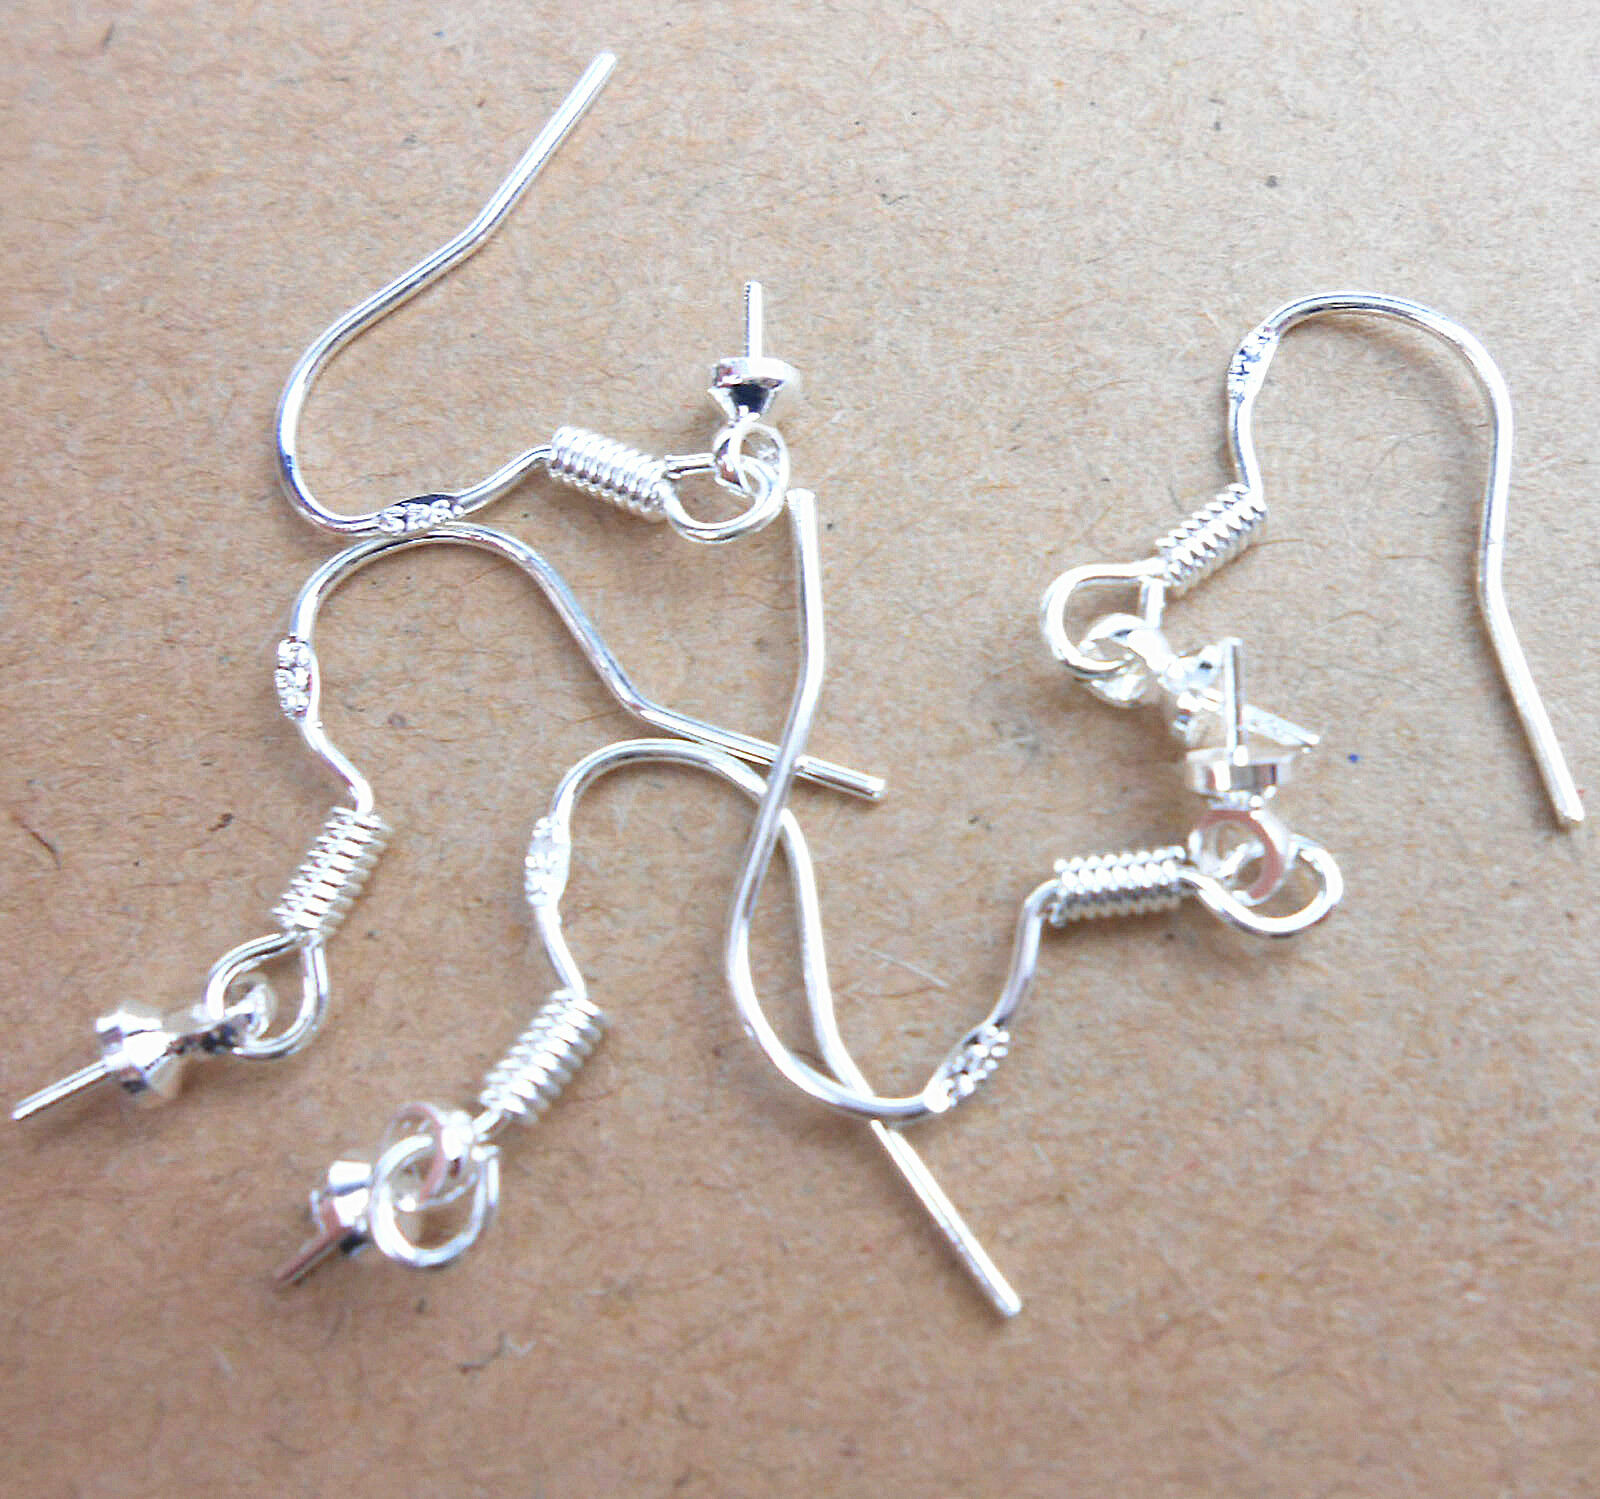 Wholesale 20x Making Jewelry Findings 925 Sterling Silver Earring Hook Ear Wires